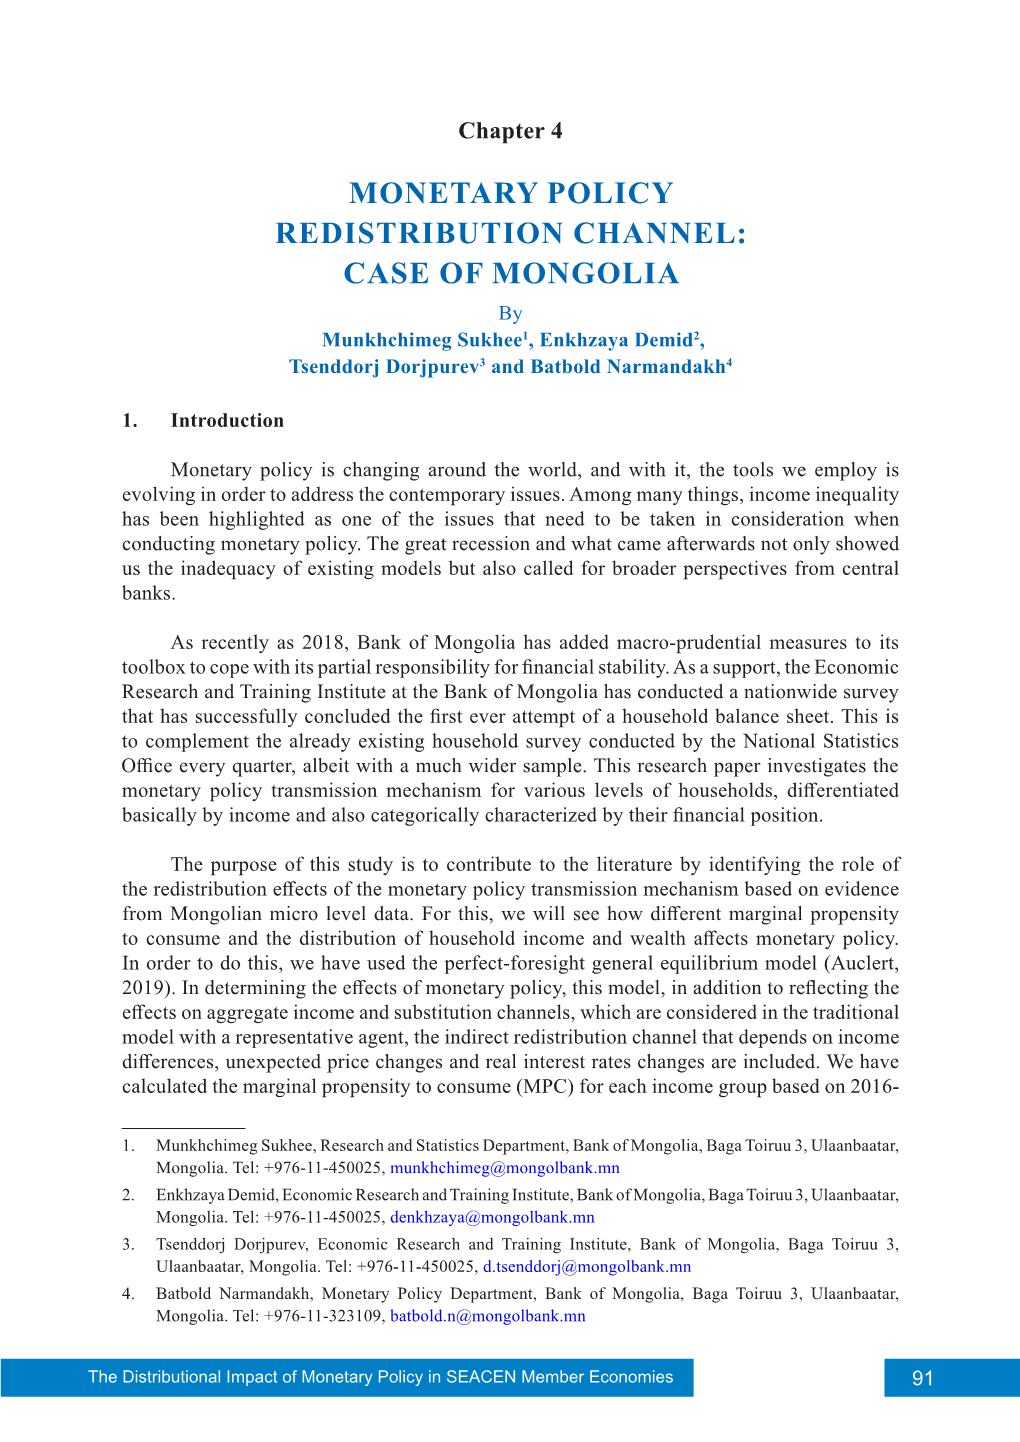 CASE of MONGOLIA by Munkhchimeg Sukhee1, Enkhzaya Demid2, Tsenddorj Dorjpurev3 and Batbold Narmandakh4